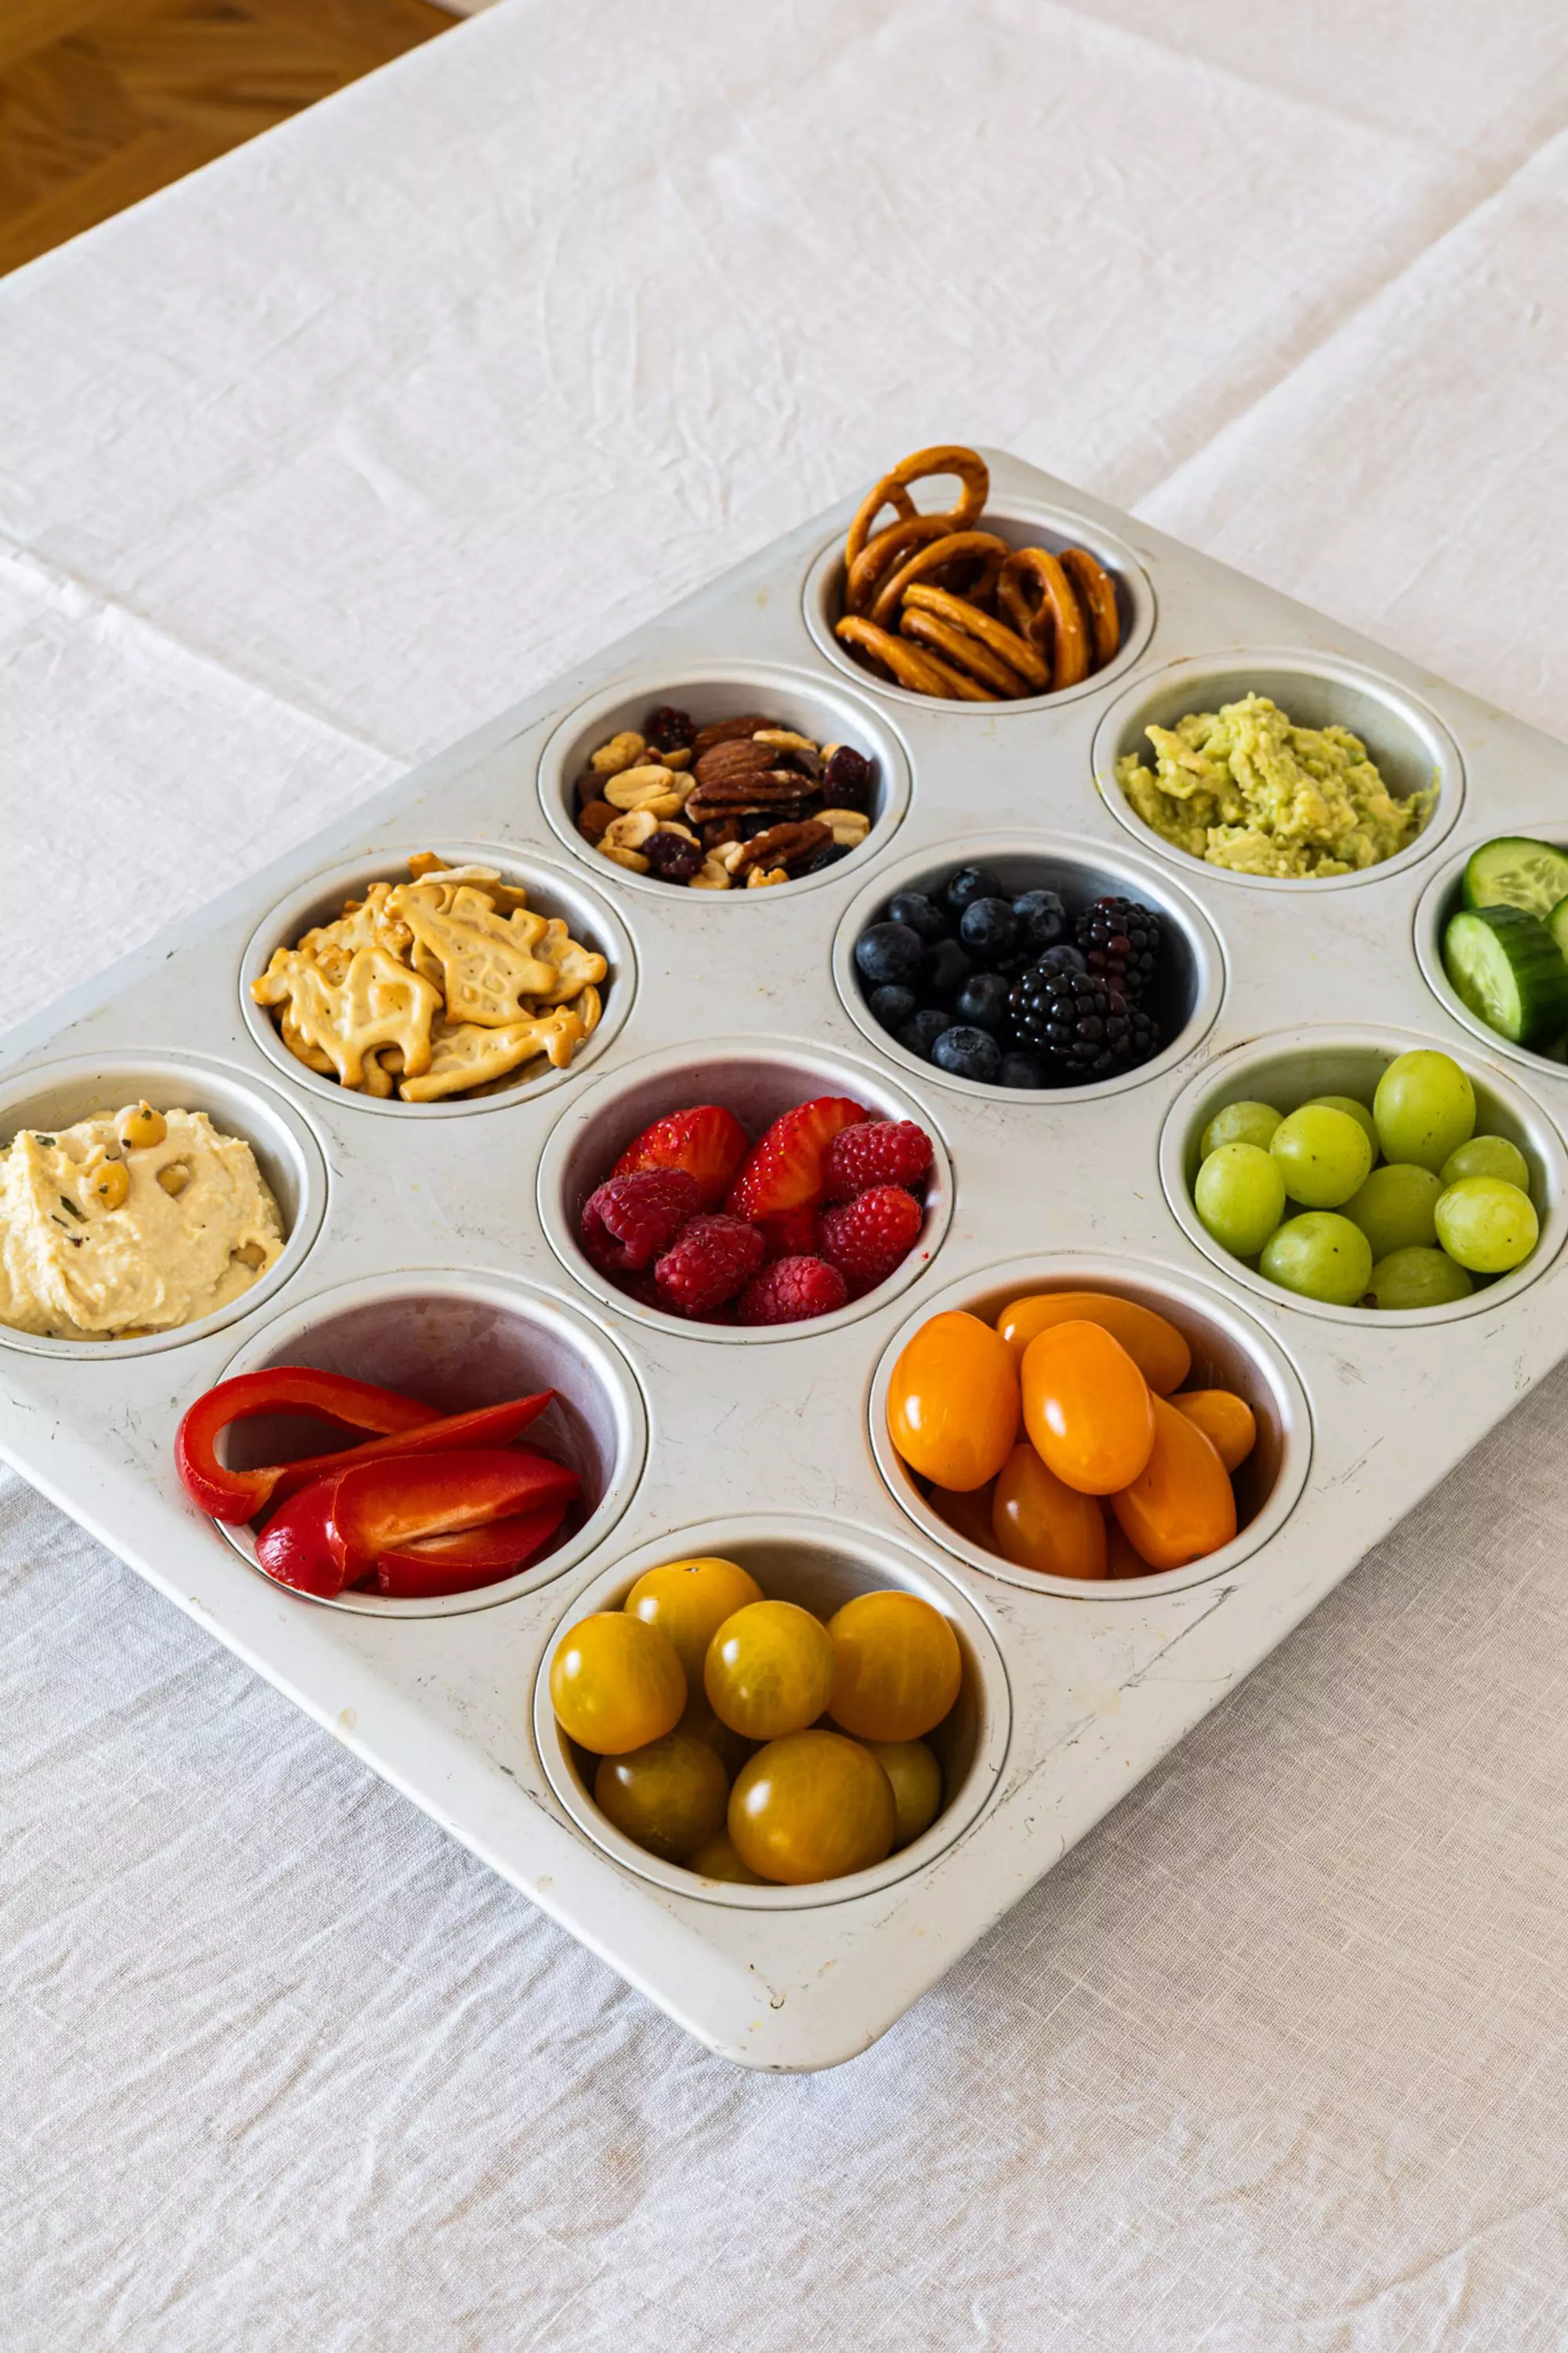 In einer Muffinform sind verschiedene Gemüse- und Fruchtportionen übersichtlich und platzsparend für dein nächstes Picknick zu arrangiert. Dies vermeidet Durcheinander und sieht ansprechend aus.